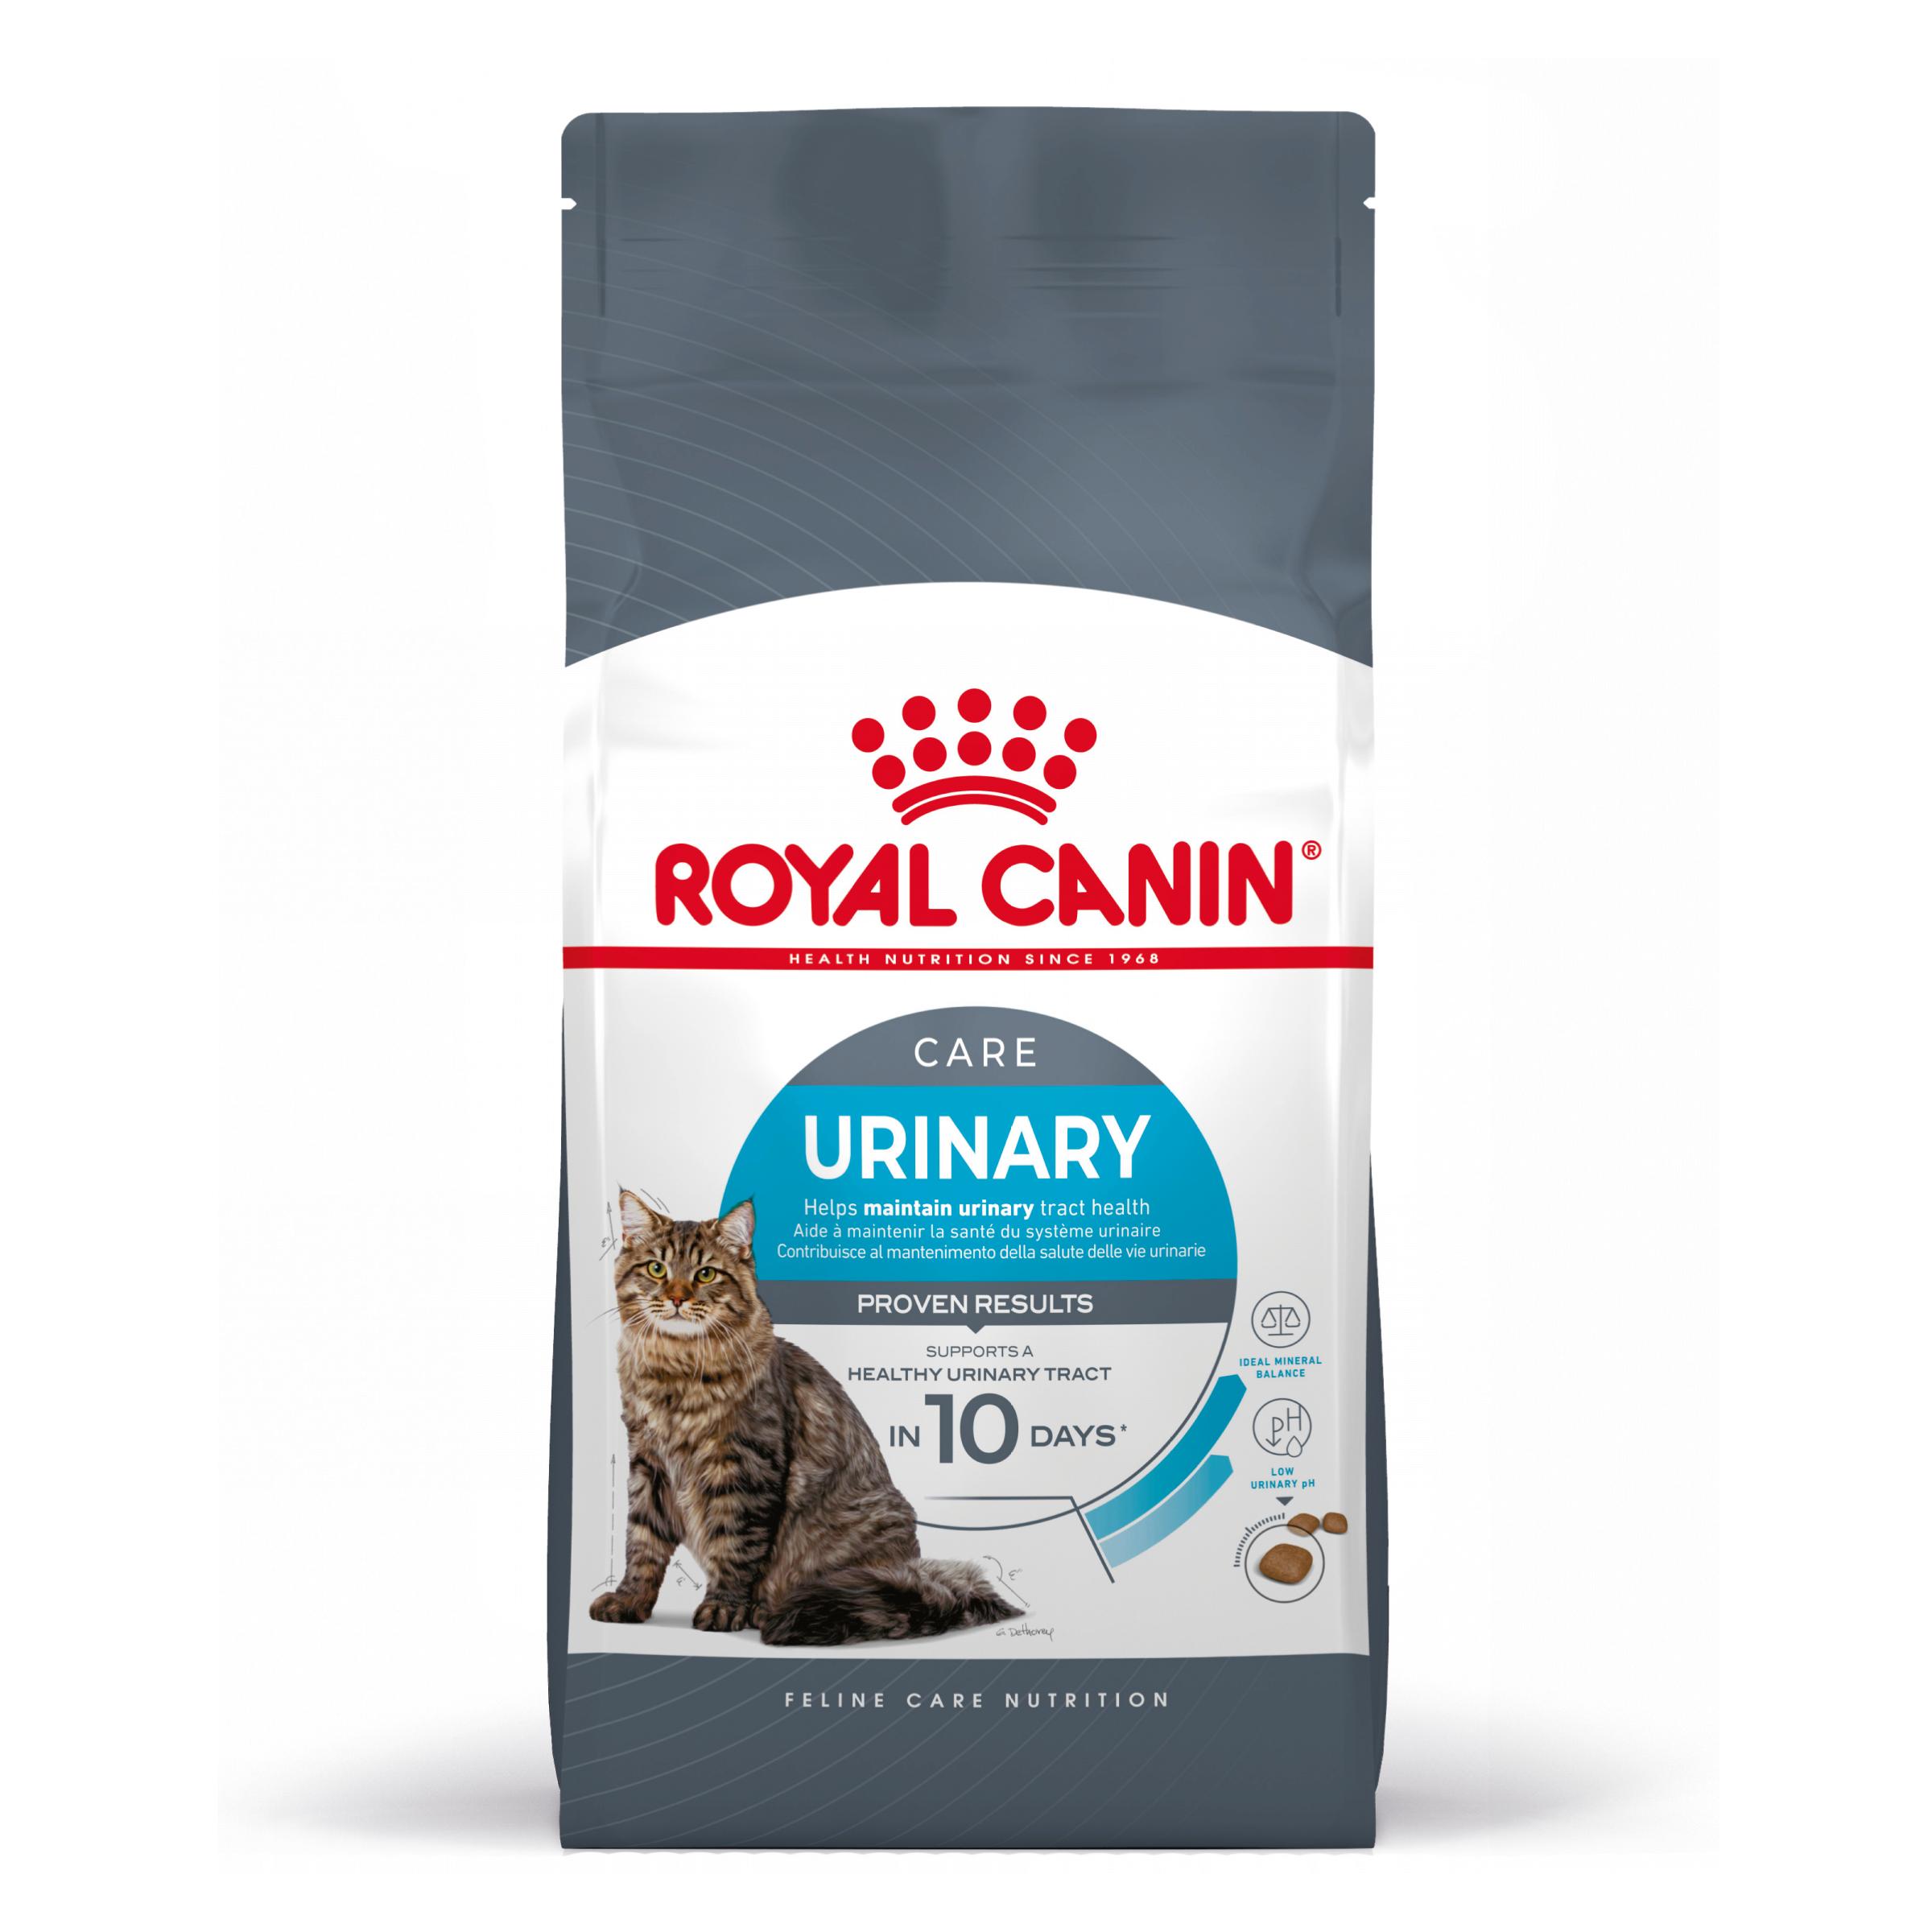 Royal Canin Urinary Care - Aliment pour chats adultes. - Recommandé pour aider à maintenir la santé du système urinaire - 4KG